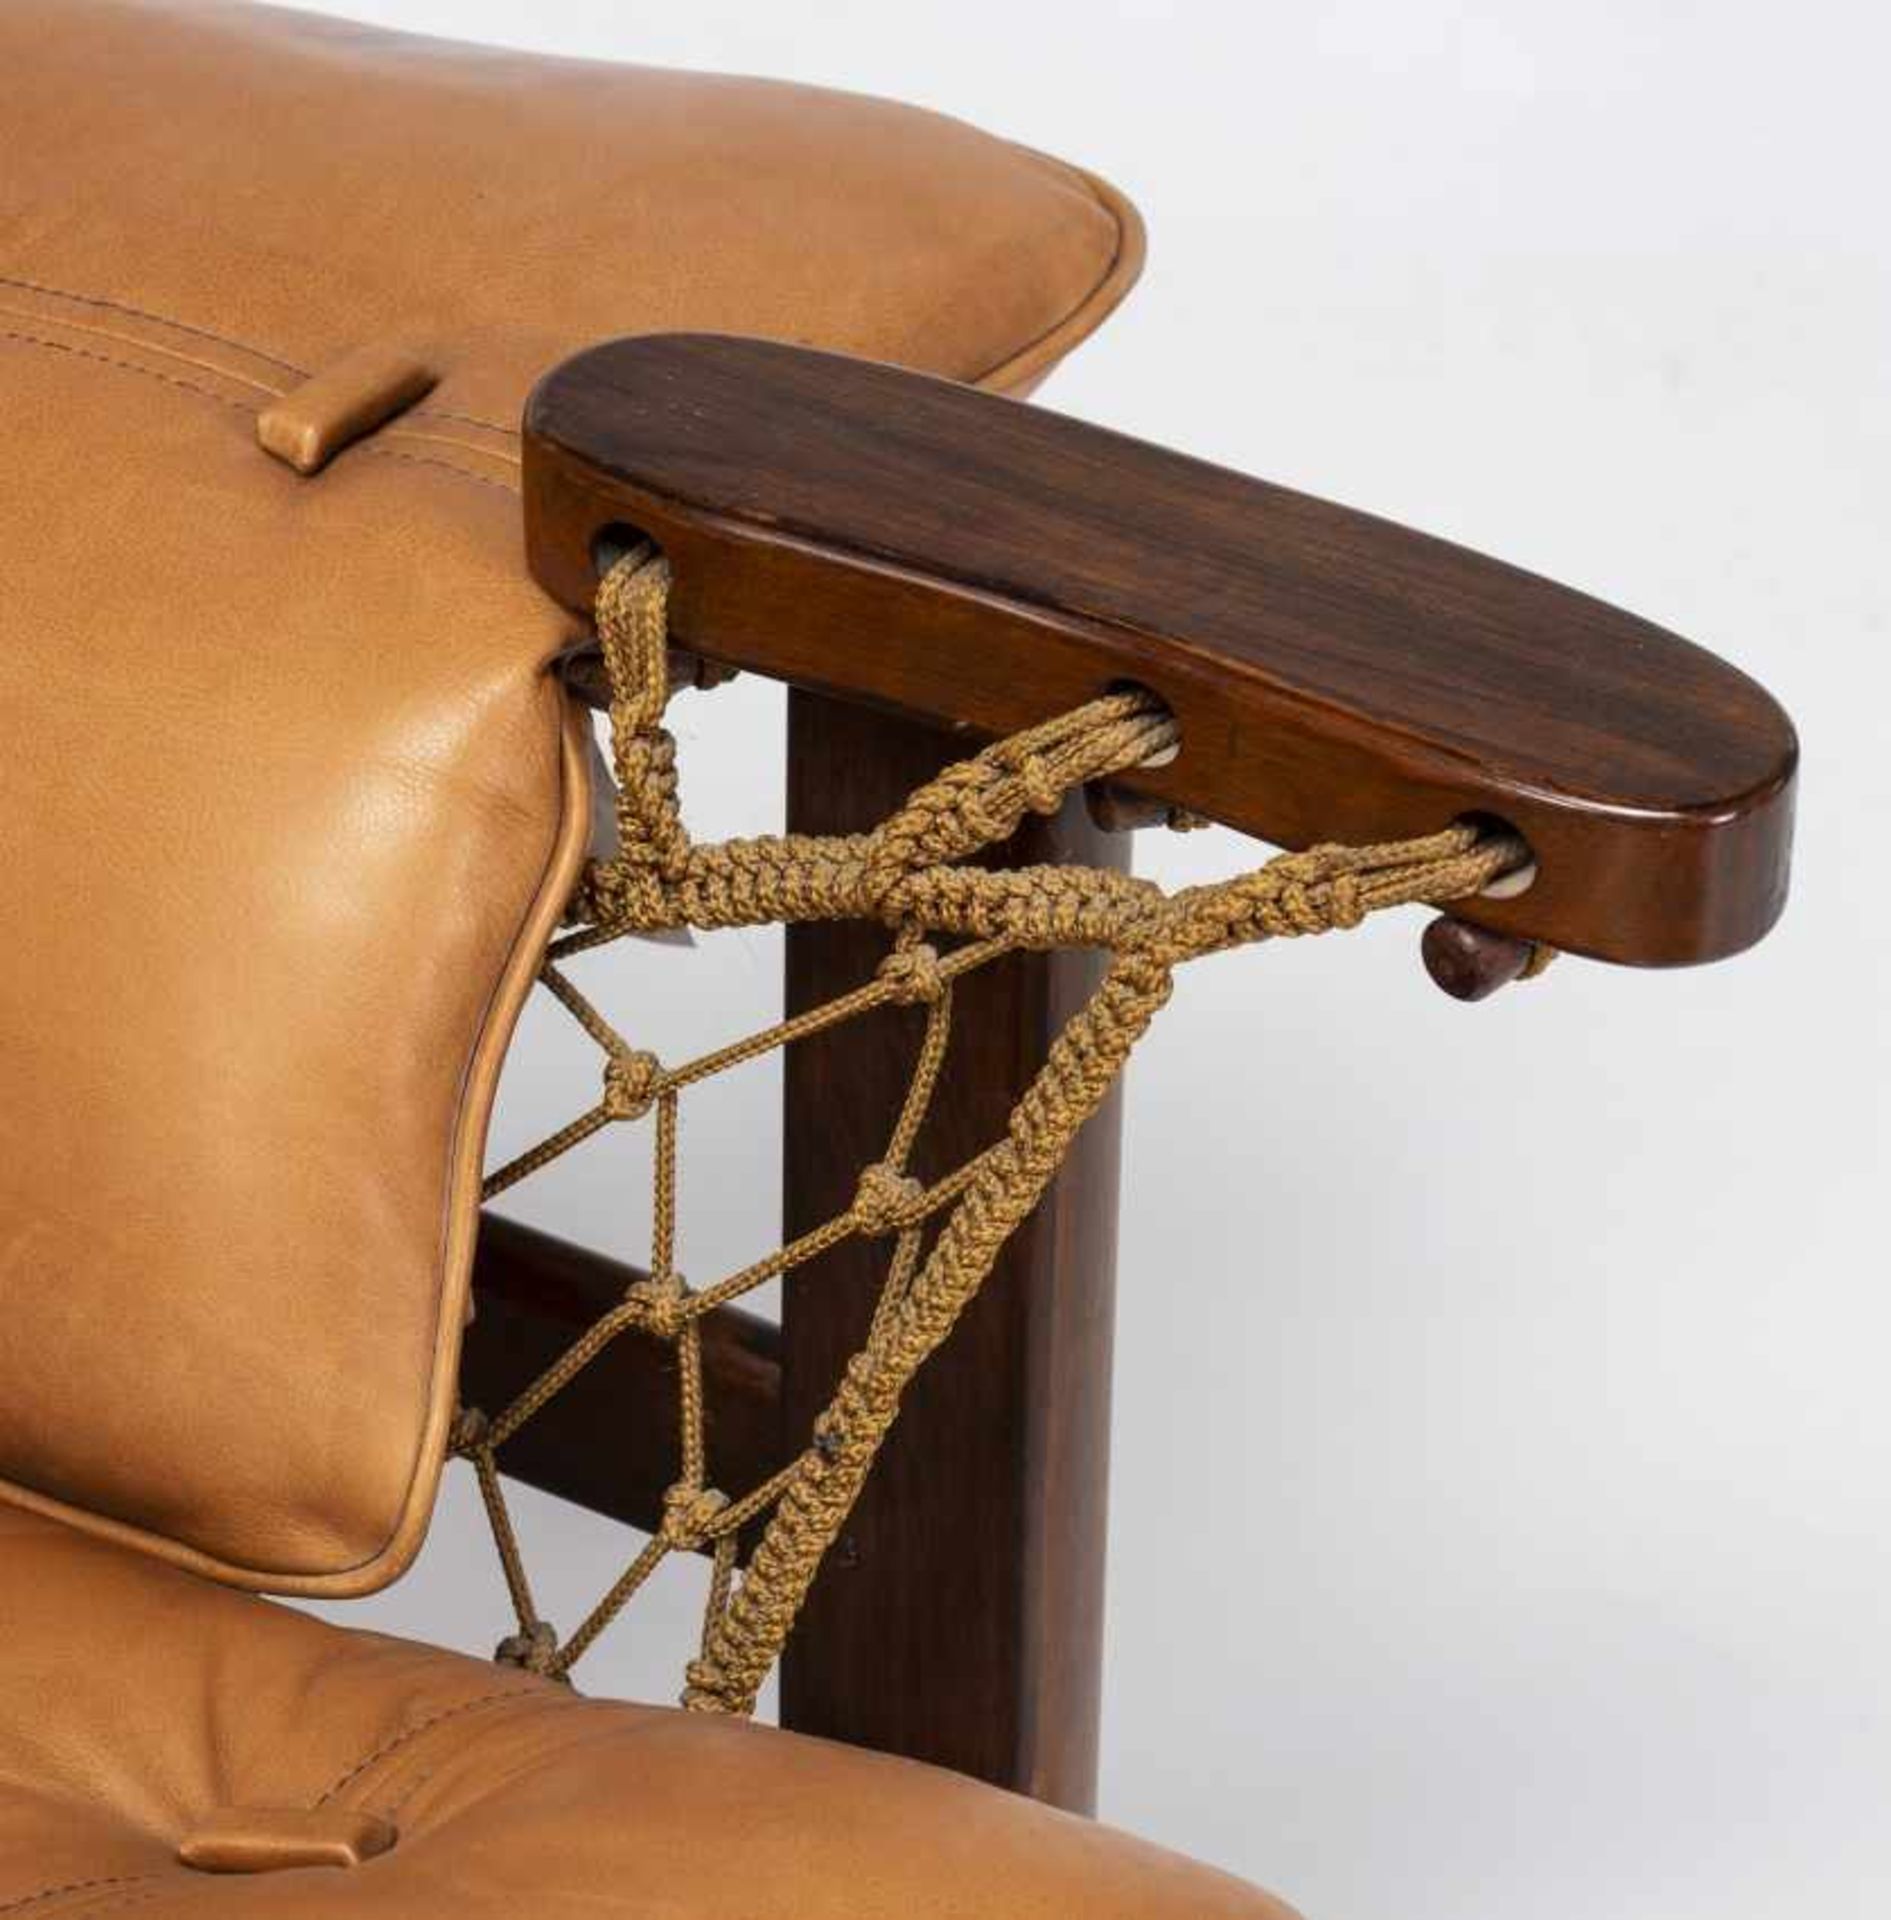 Jean Gillon, "Captain's" armchair with ottoman, Rosewood, sJean GillonIasi, 1919 - Sao Paulo, 2007" - Bild 4 aus 8